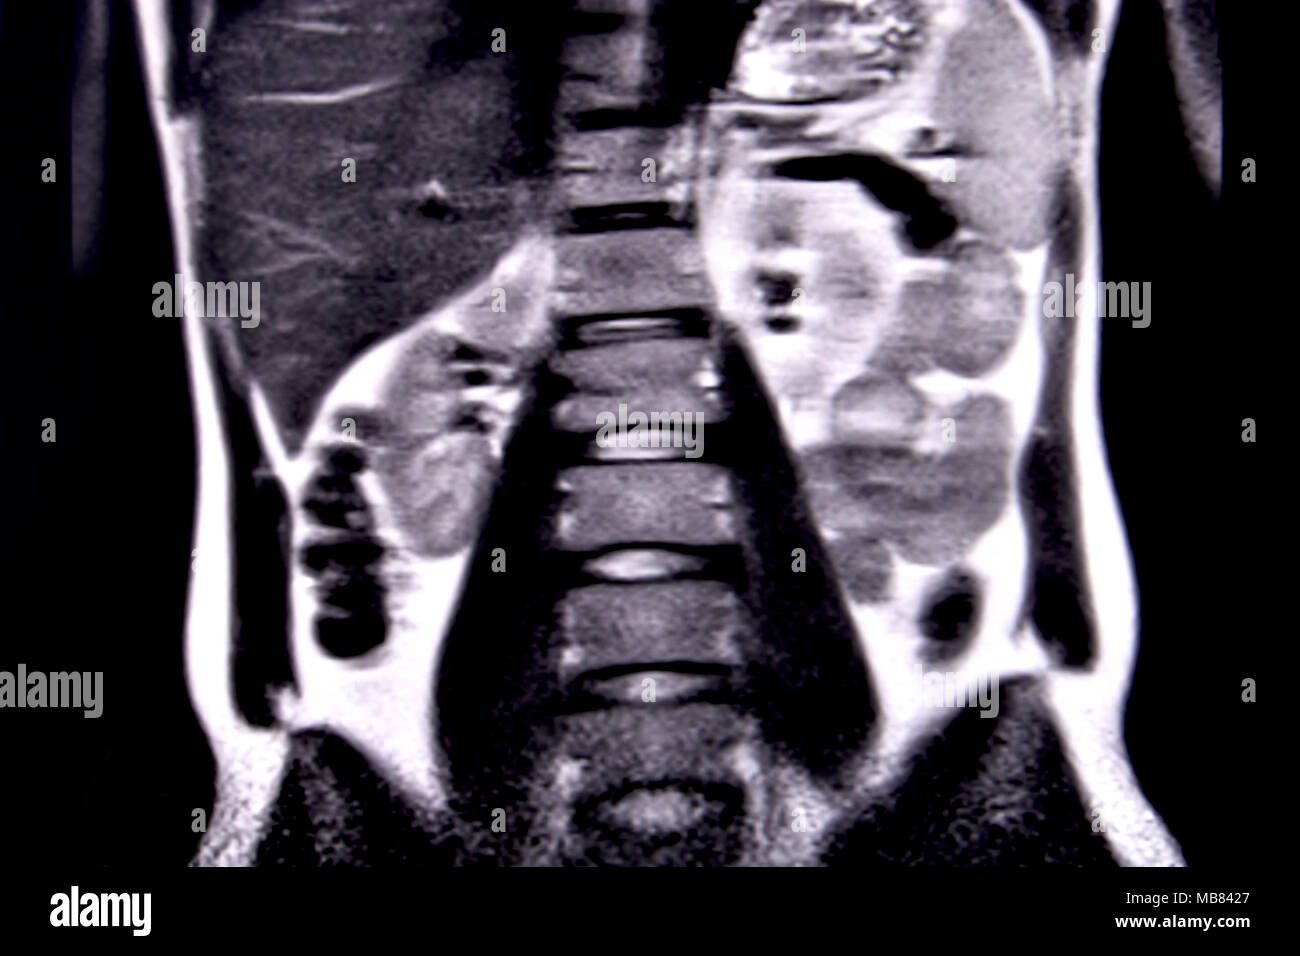 Balade à travers les droits de l'abdomen et la poitrine à l'aide d'IRM 18 coupes (vue coronale). Photo 8/18 Banque D'Images